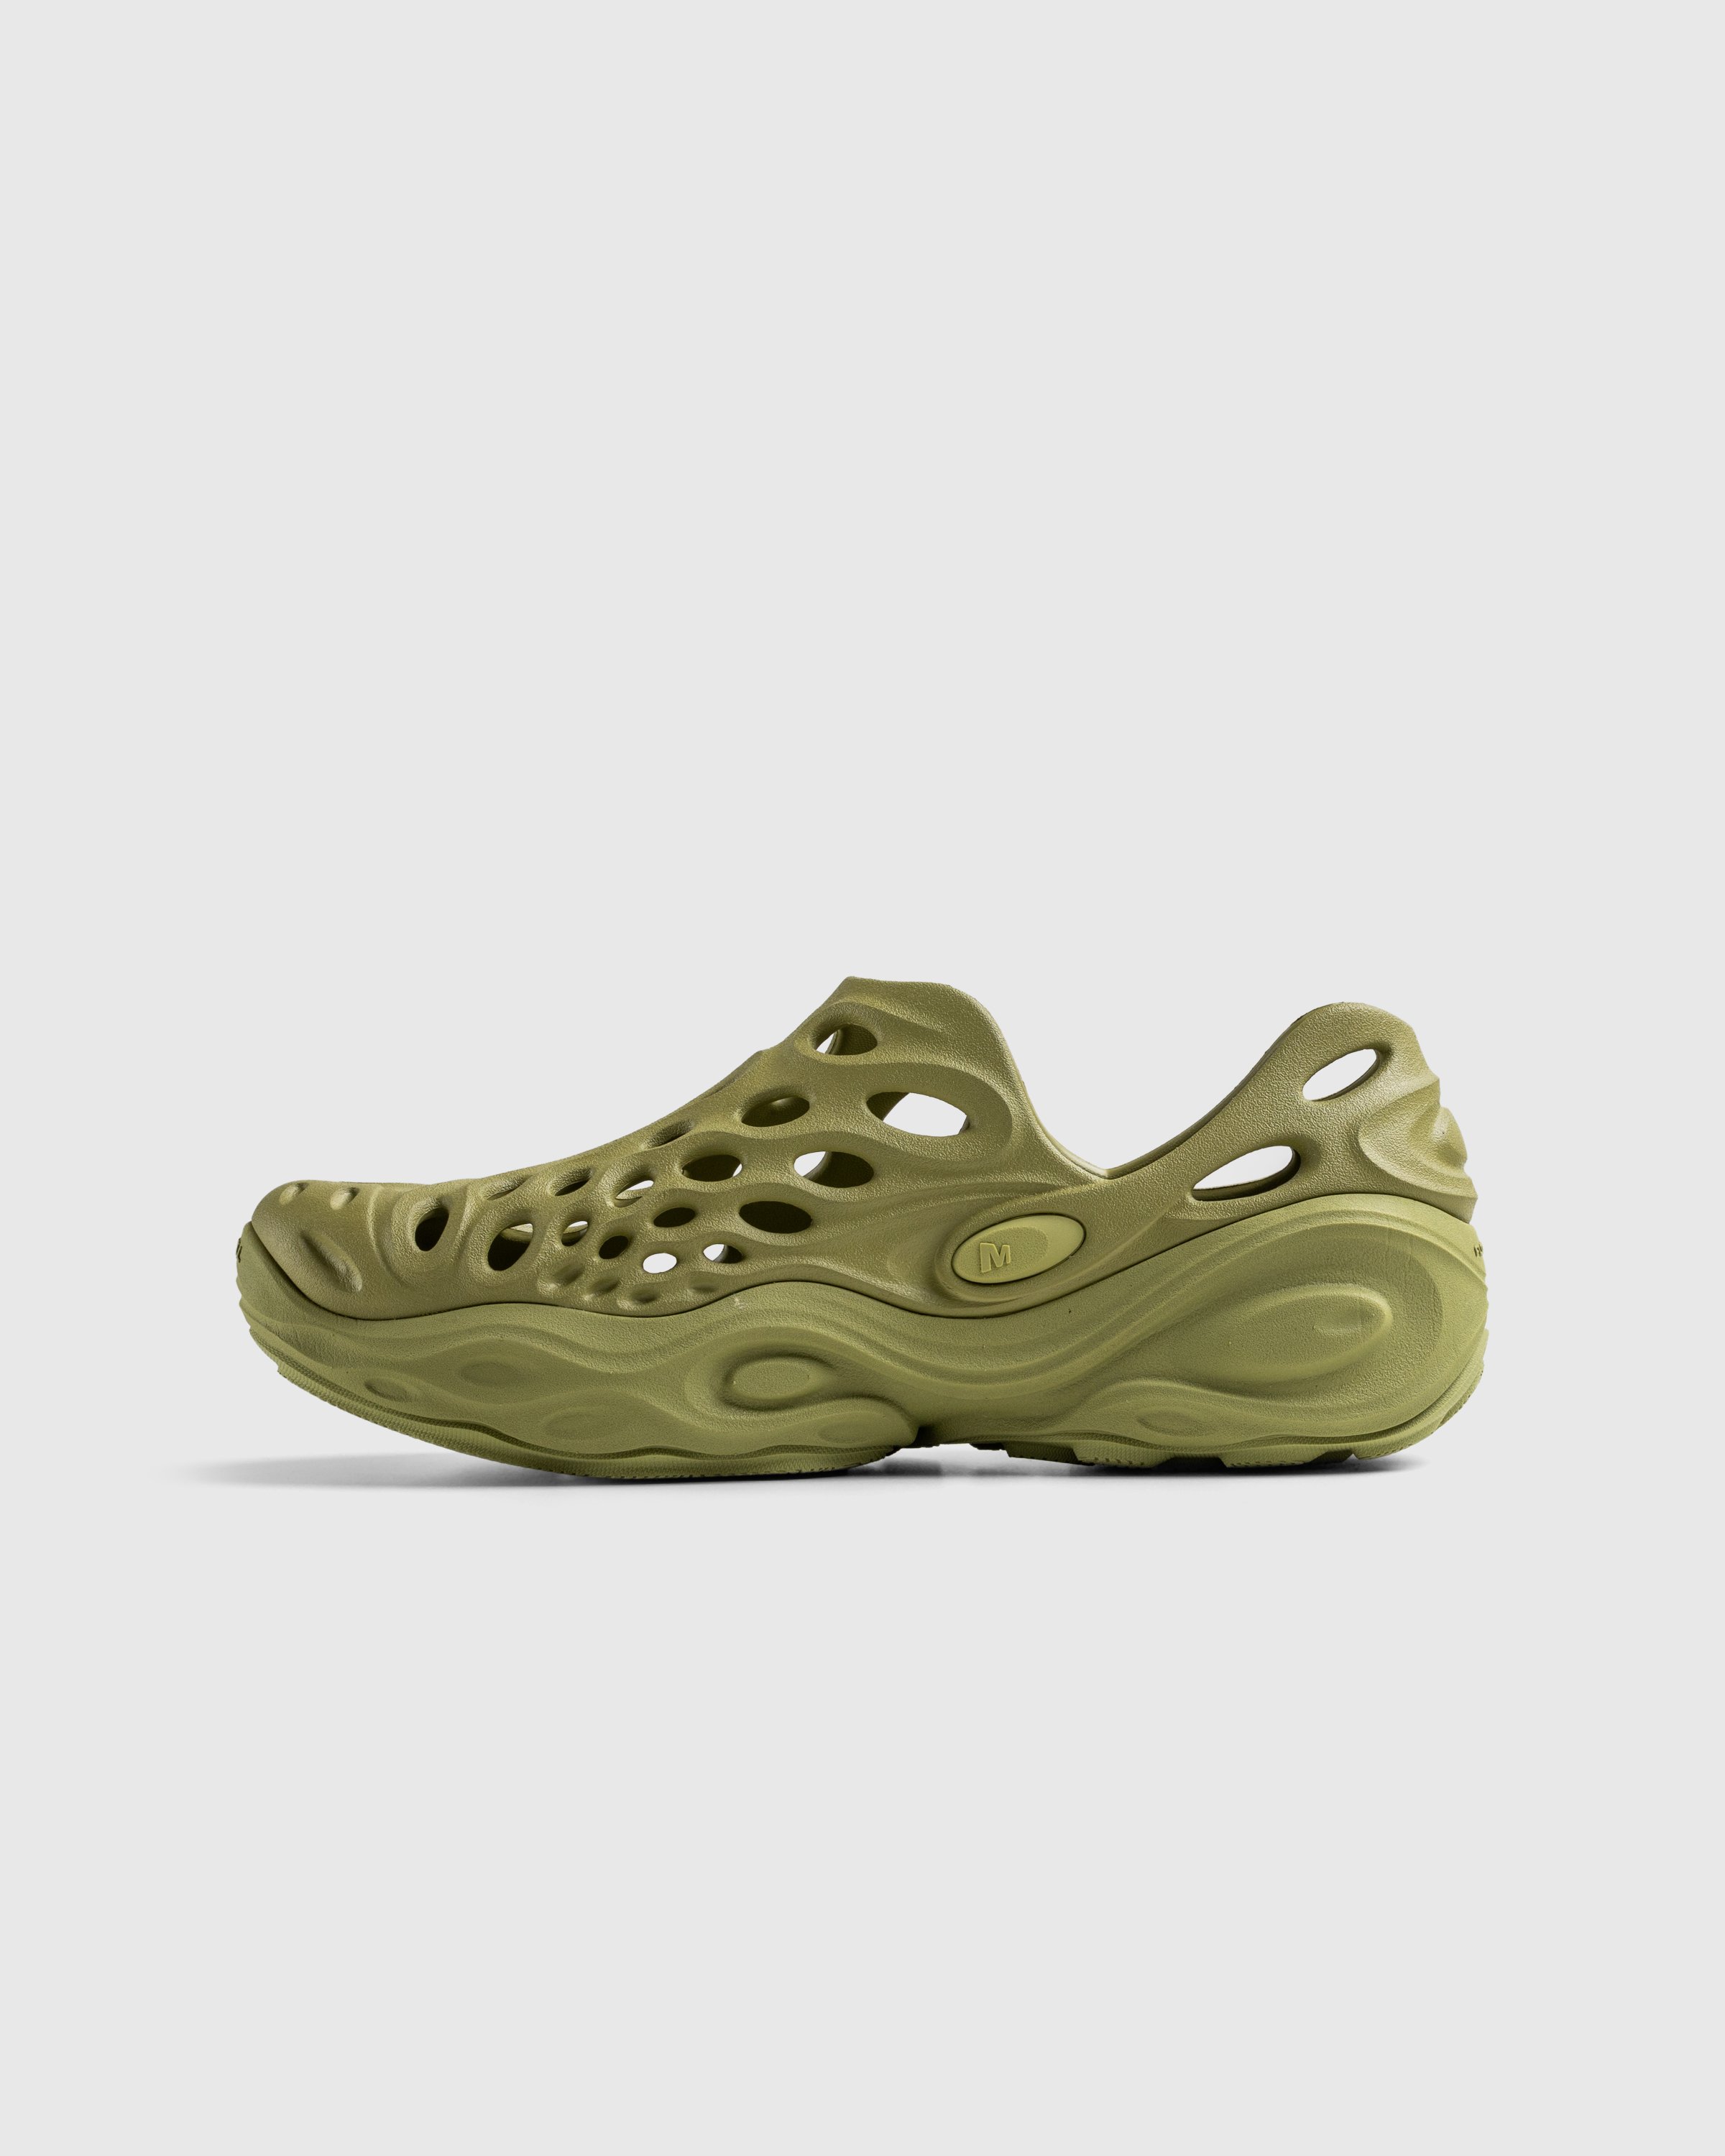 Merrell - HYDRO NEXT GEN MOC SE/TRIPLE MOSSTONE - Footwear - Green - Image 2